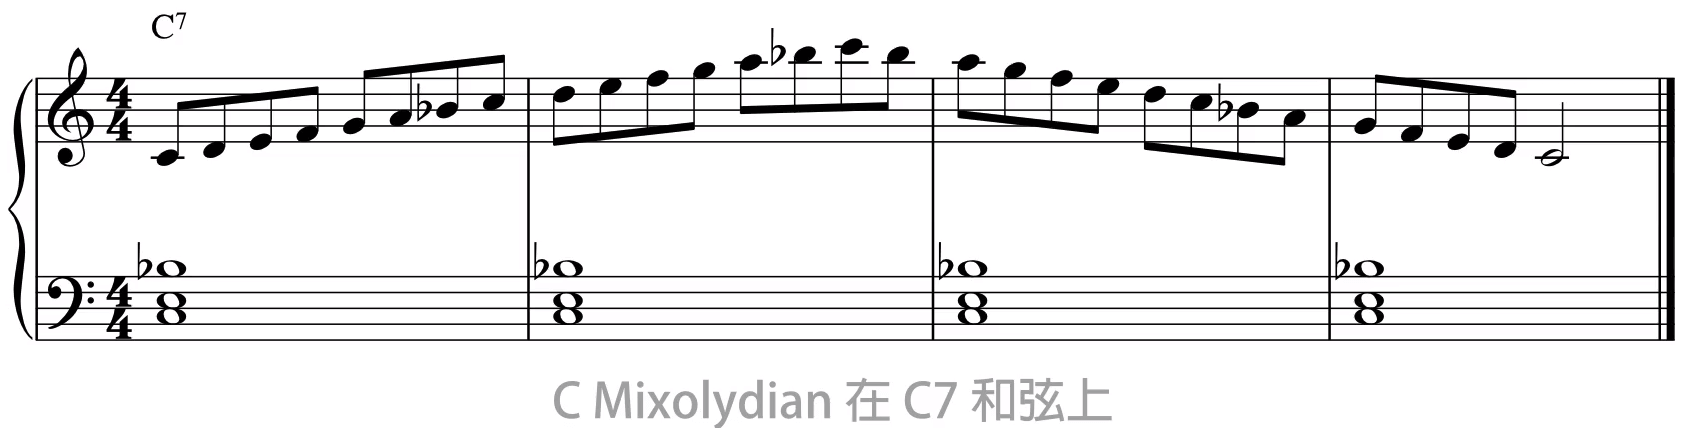 在属七和弦上写 Mixolydian 的旋律